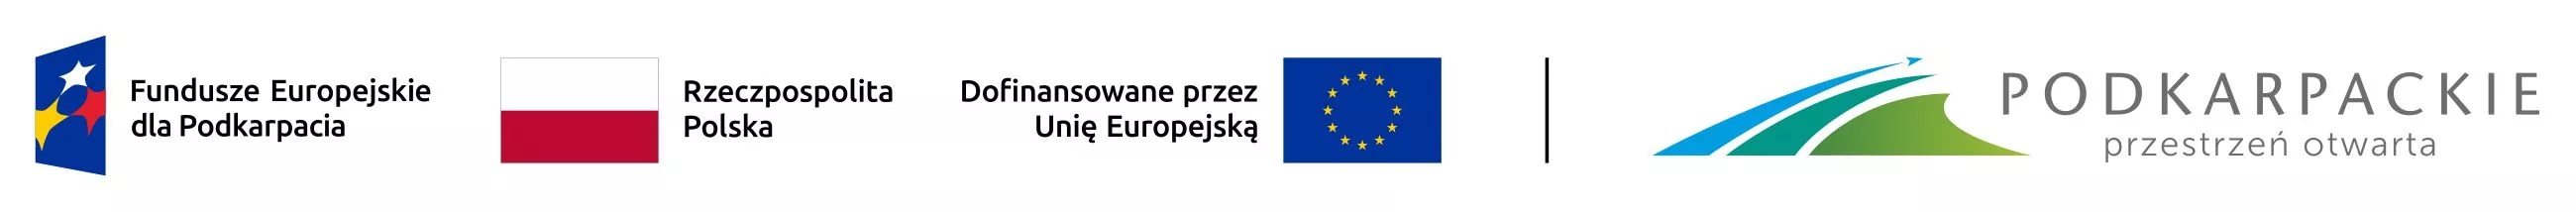 Logotypy Funduszy Europejskich dla Podkarpacia, flaga Polski, UE I logo Województwa Podkarpackiego.